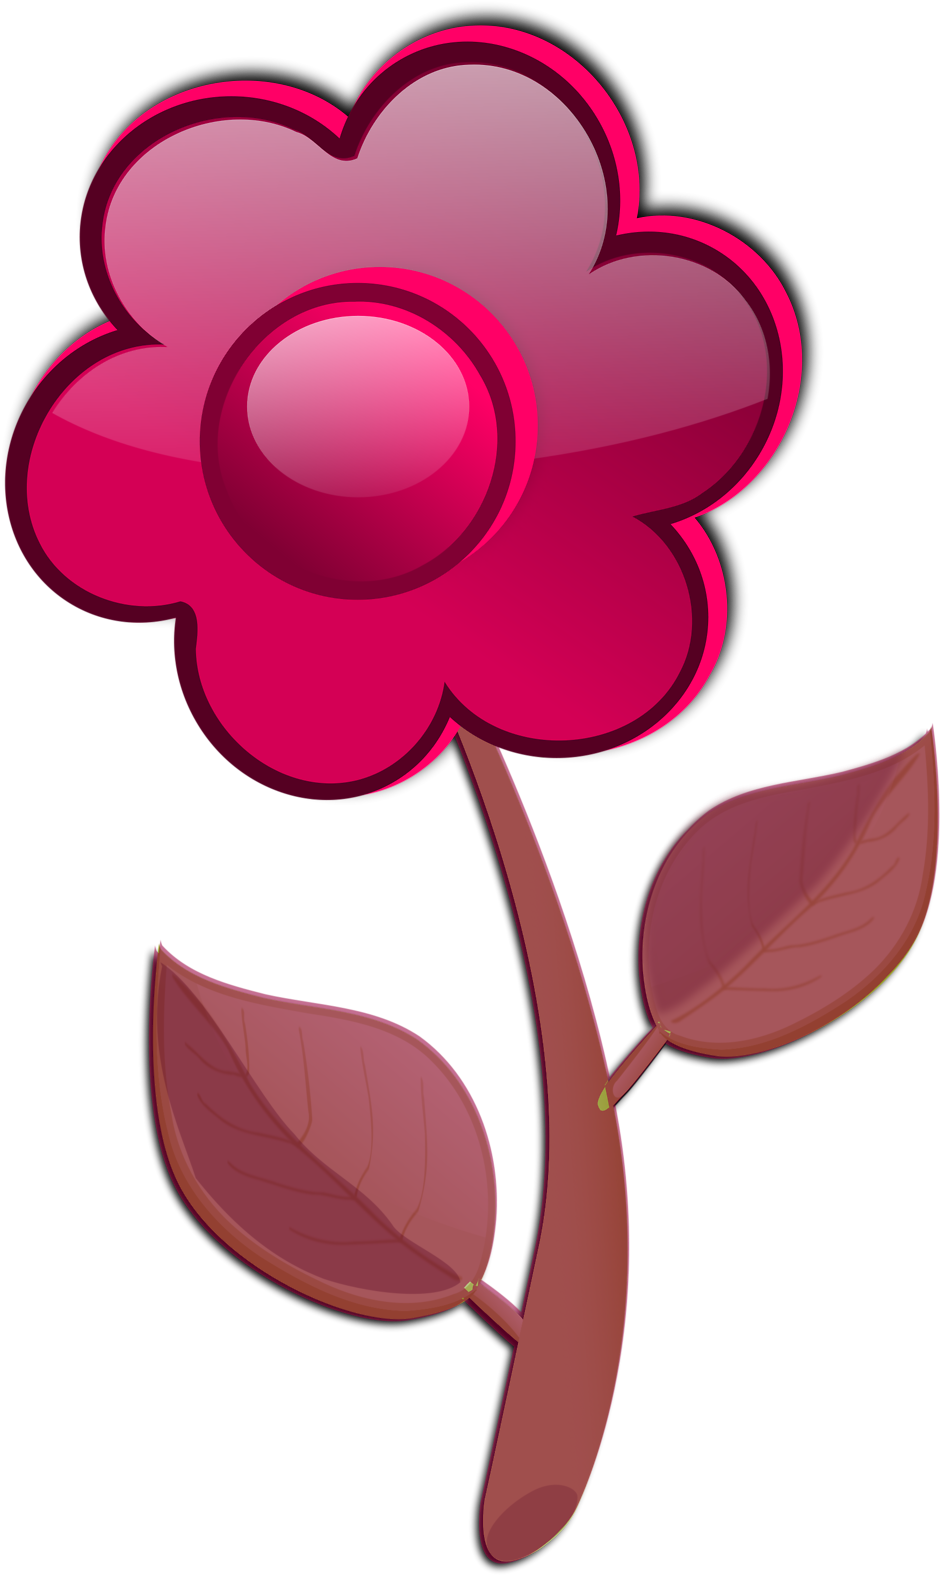 Free Flower A2 - Cartoon Pink Flower (958x1612)